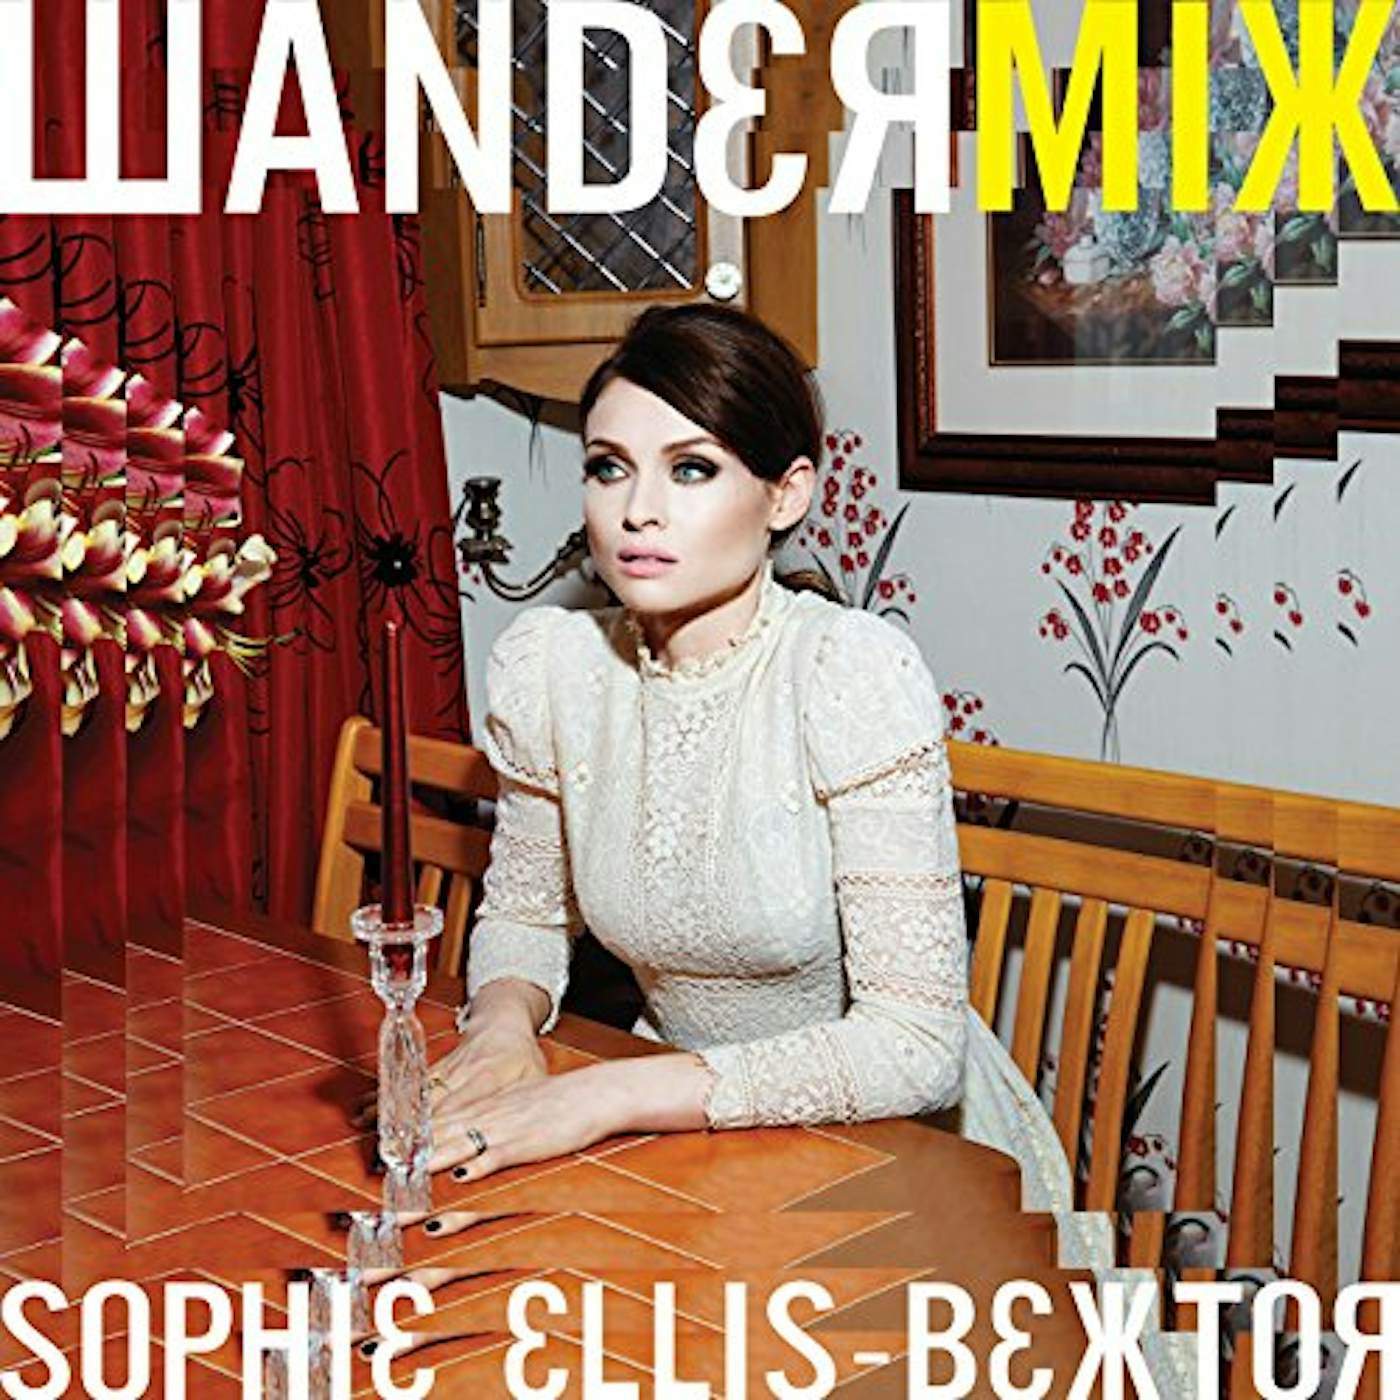 Sophie Ellis-Bextor Wandermix Vinyl Record